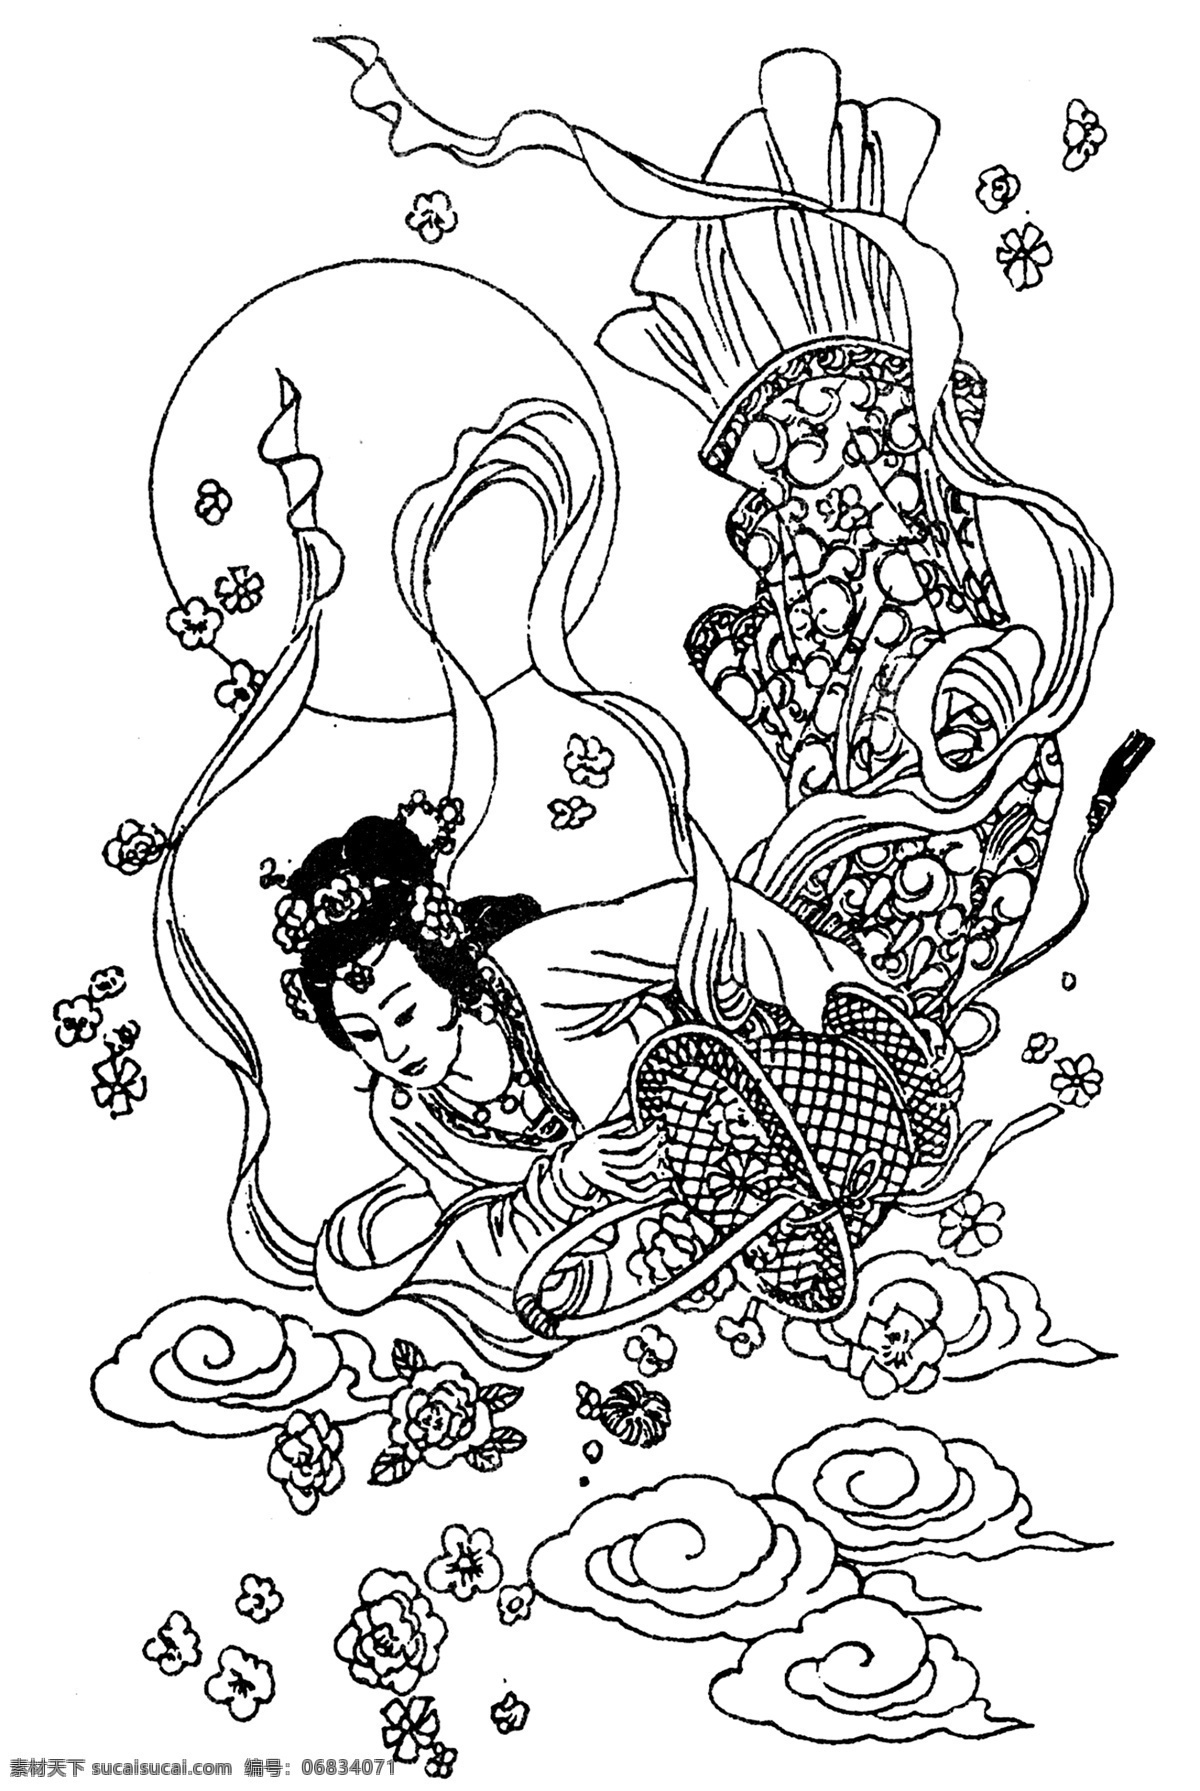 中国吉祥图案 吉祥象征图案 图案素材 线描 古典图案 图案纹样 传统纹样 传统图案 中国传统 中式纹饰 艺术图案 传统文化 仙女散花 神仙 白描 人物白描 吉祥图案 仙女 分层 源文件